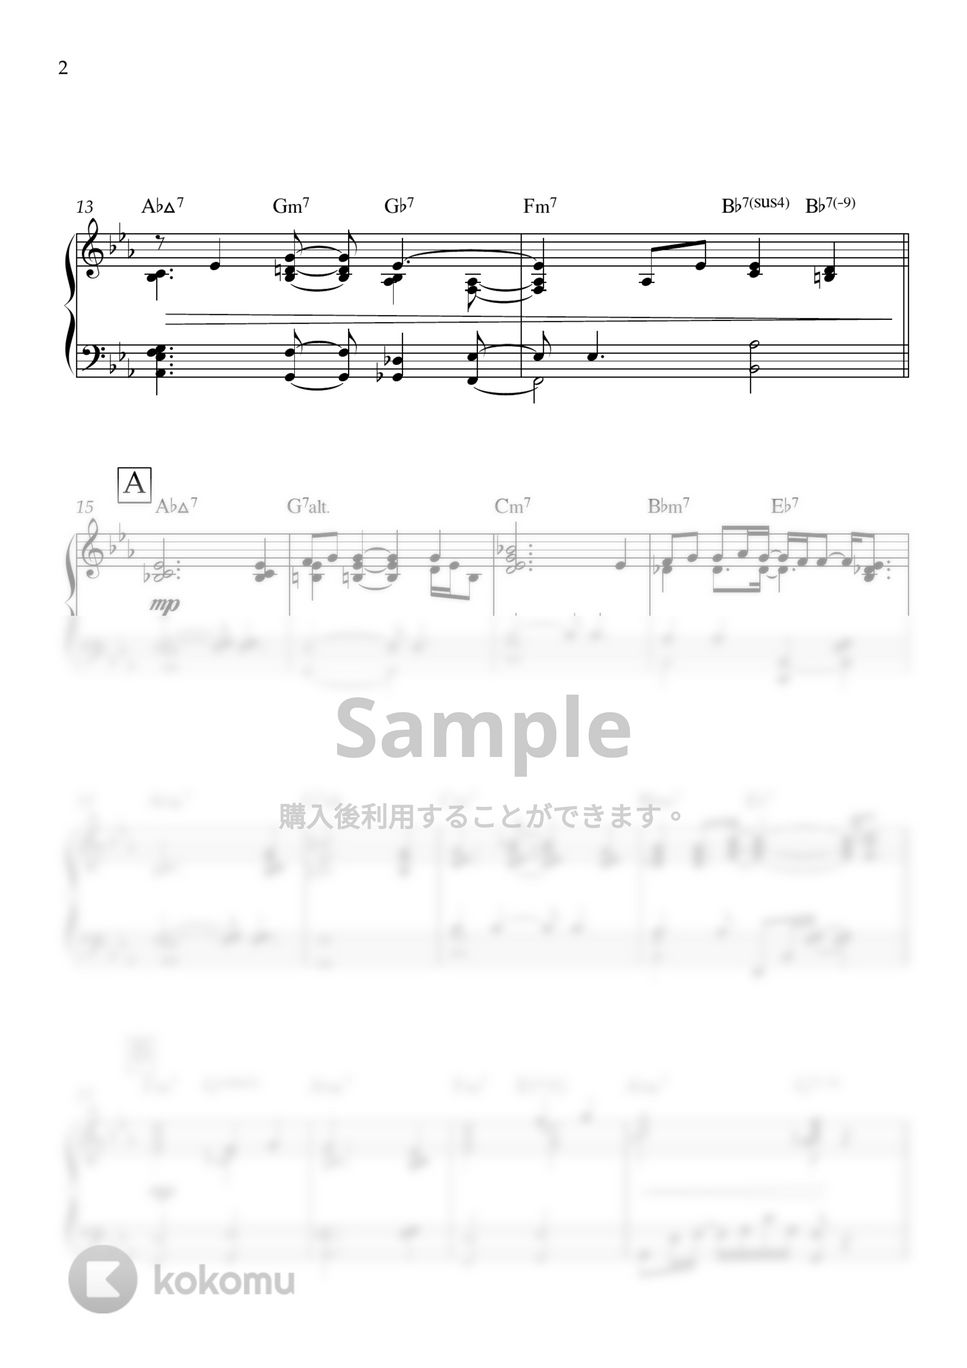 SixTONES - わたし (SixTONES,ピアノ,伴奏,アレンジ,耳コピ) by ヒット